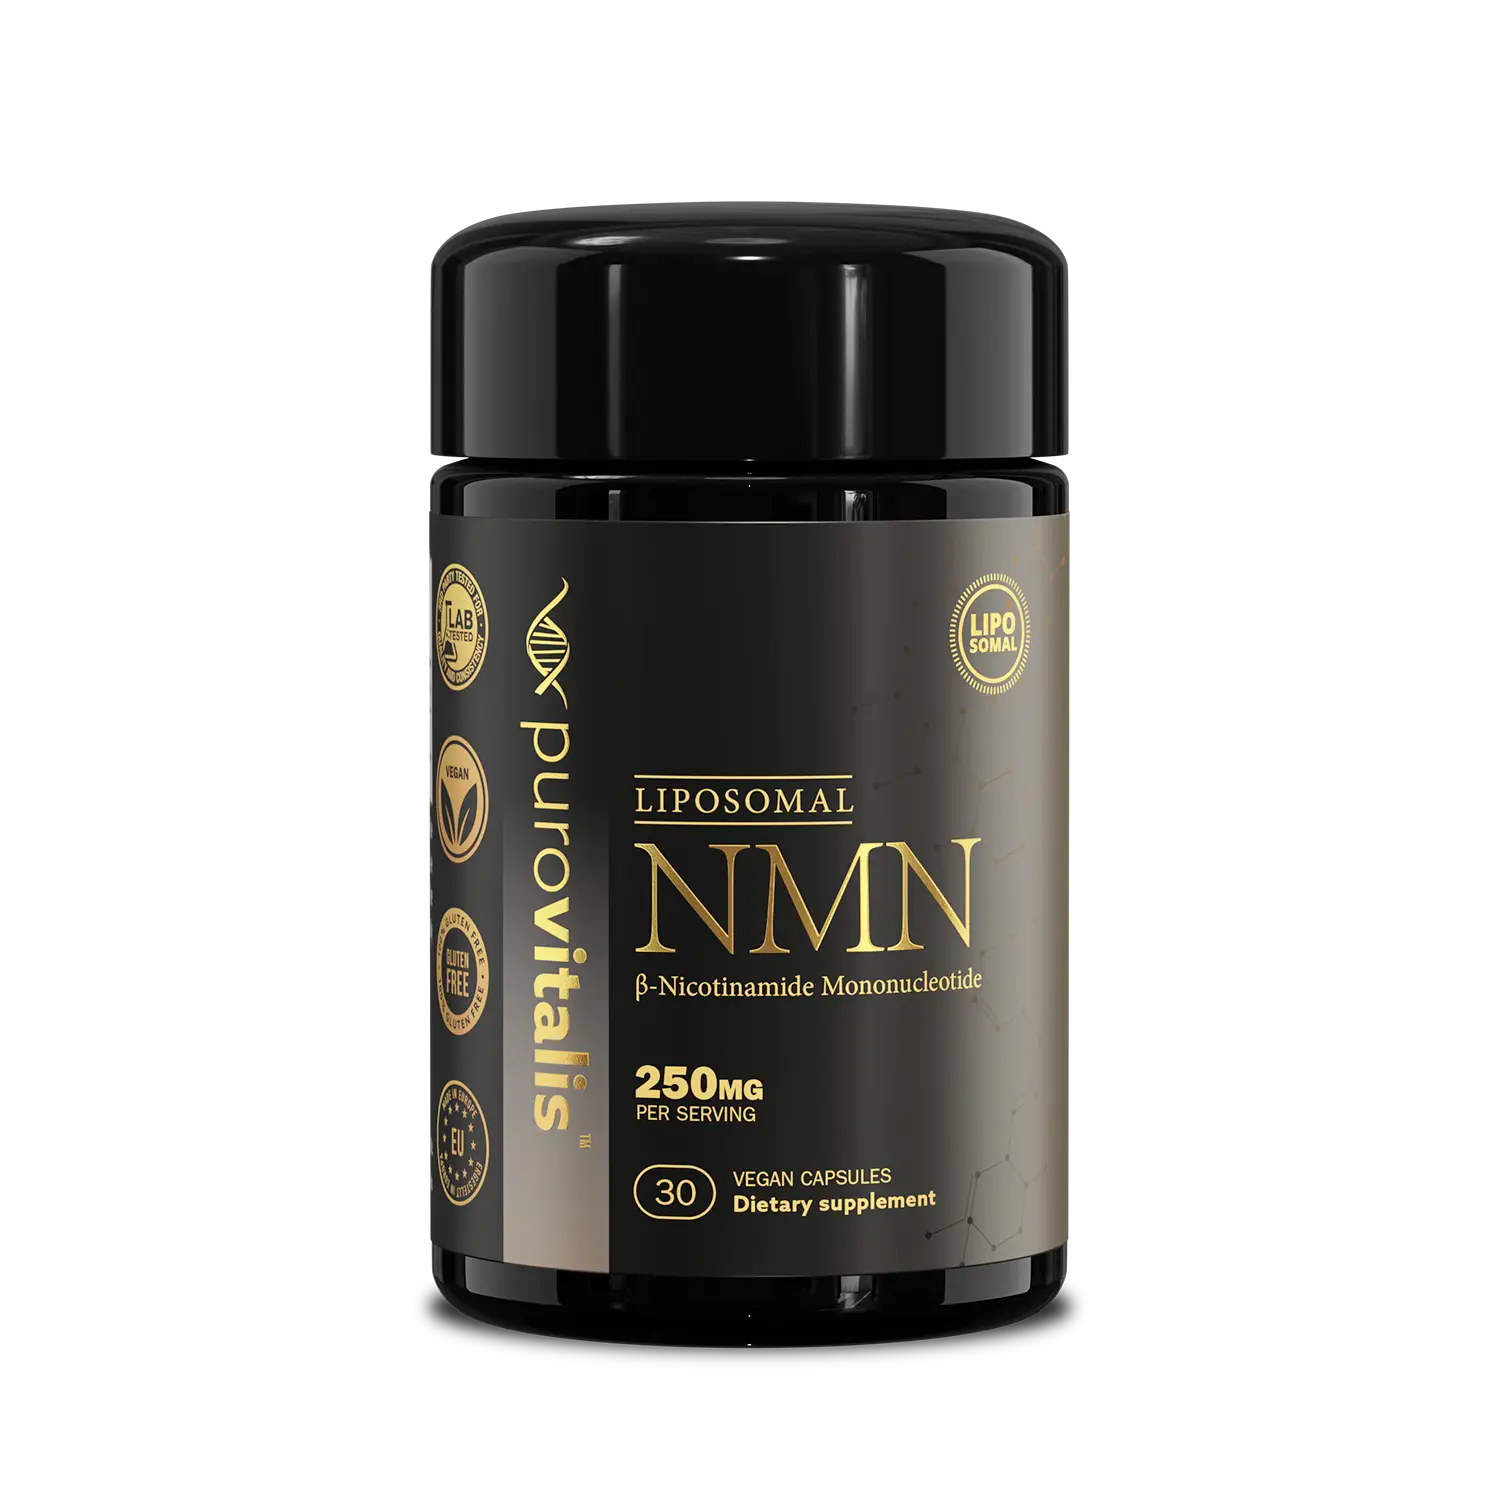 Buy Liposomal NMN supplement by purovitalis, 30 capsules per jar